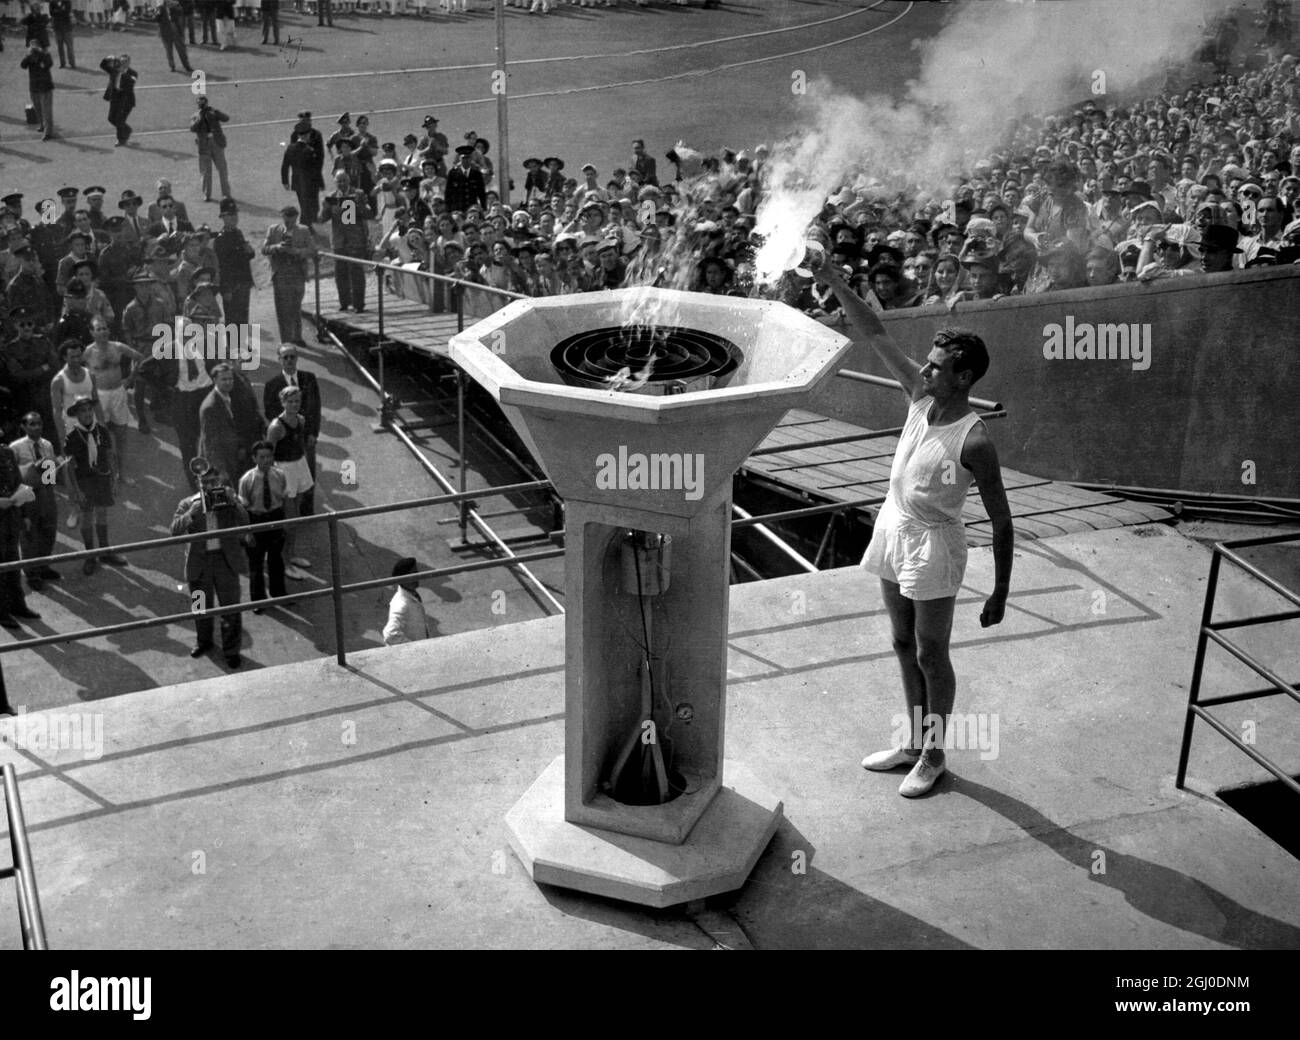 Olympische Spiele 1948 London, England das Leuchtfeuer wird zur Eröffnung der Olympischen Spiele in Wembley von einer Flamme angezündet. Juli 1948. Stockfoto